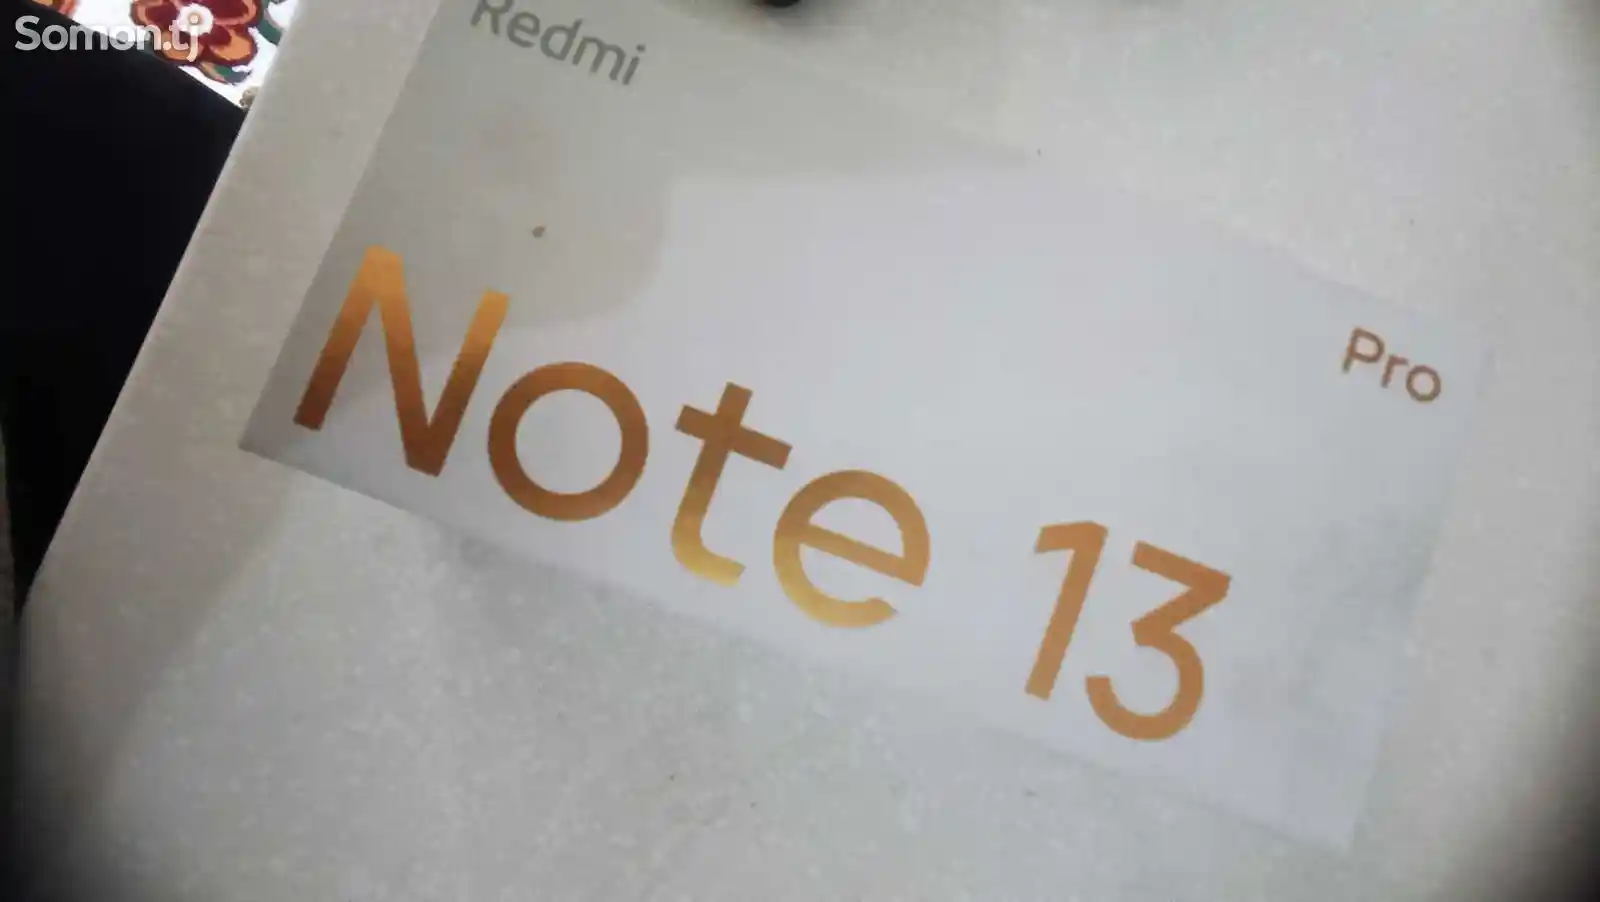 Xiaomi Redmi Note 13 Pro-1